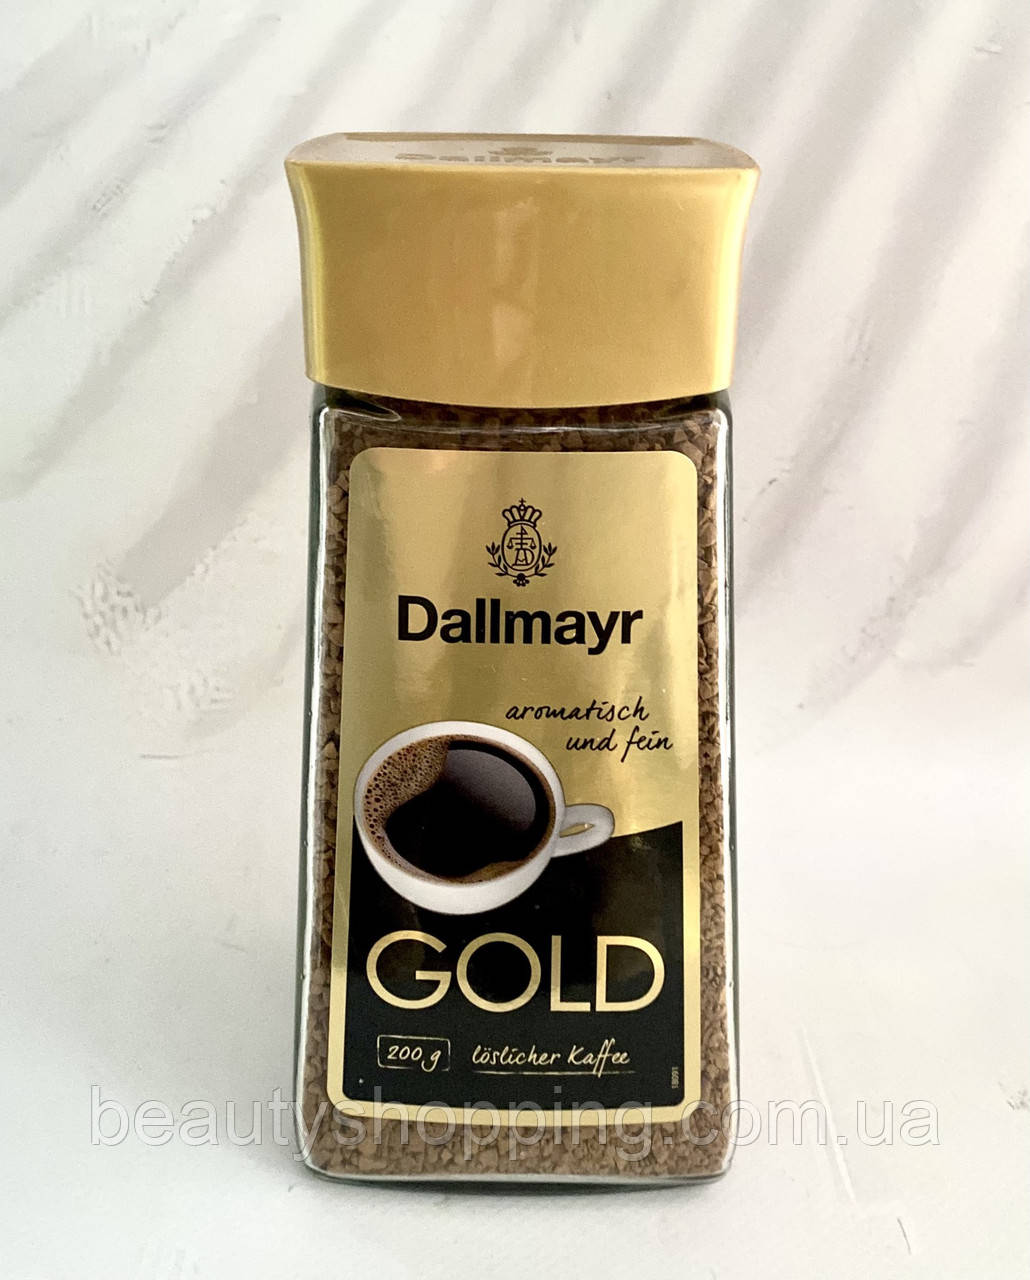 Dallmayr Gold розчинна кава 200 г Німеччина